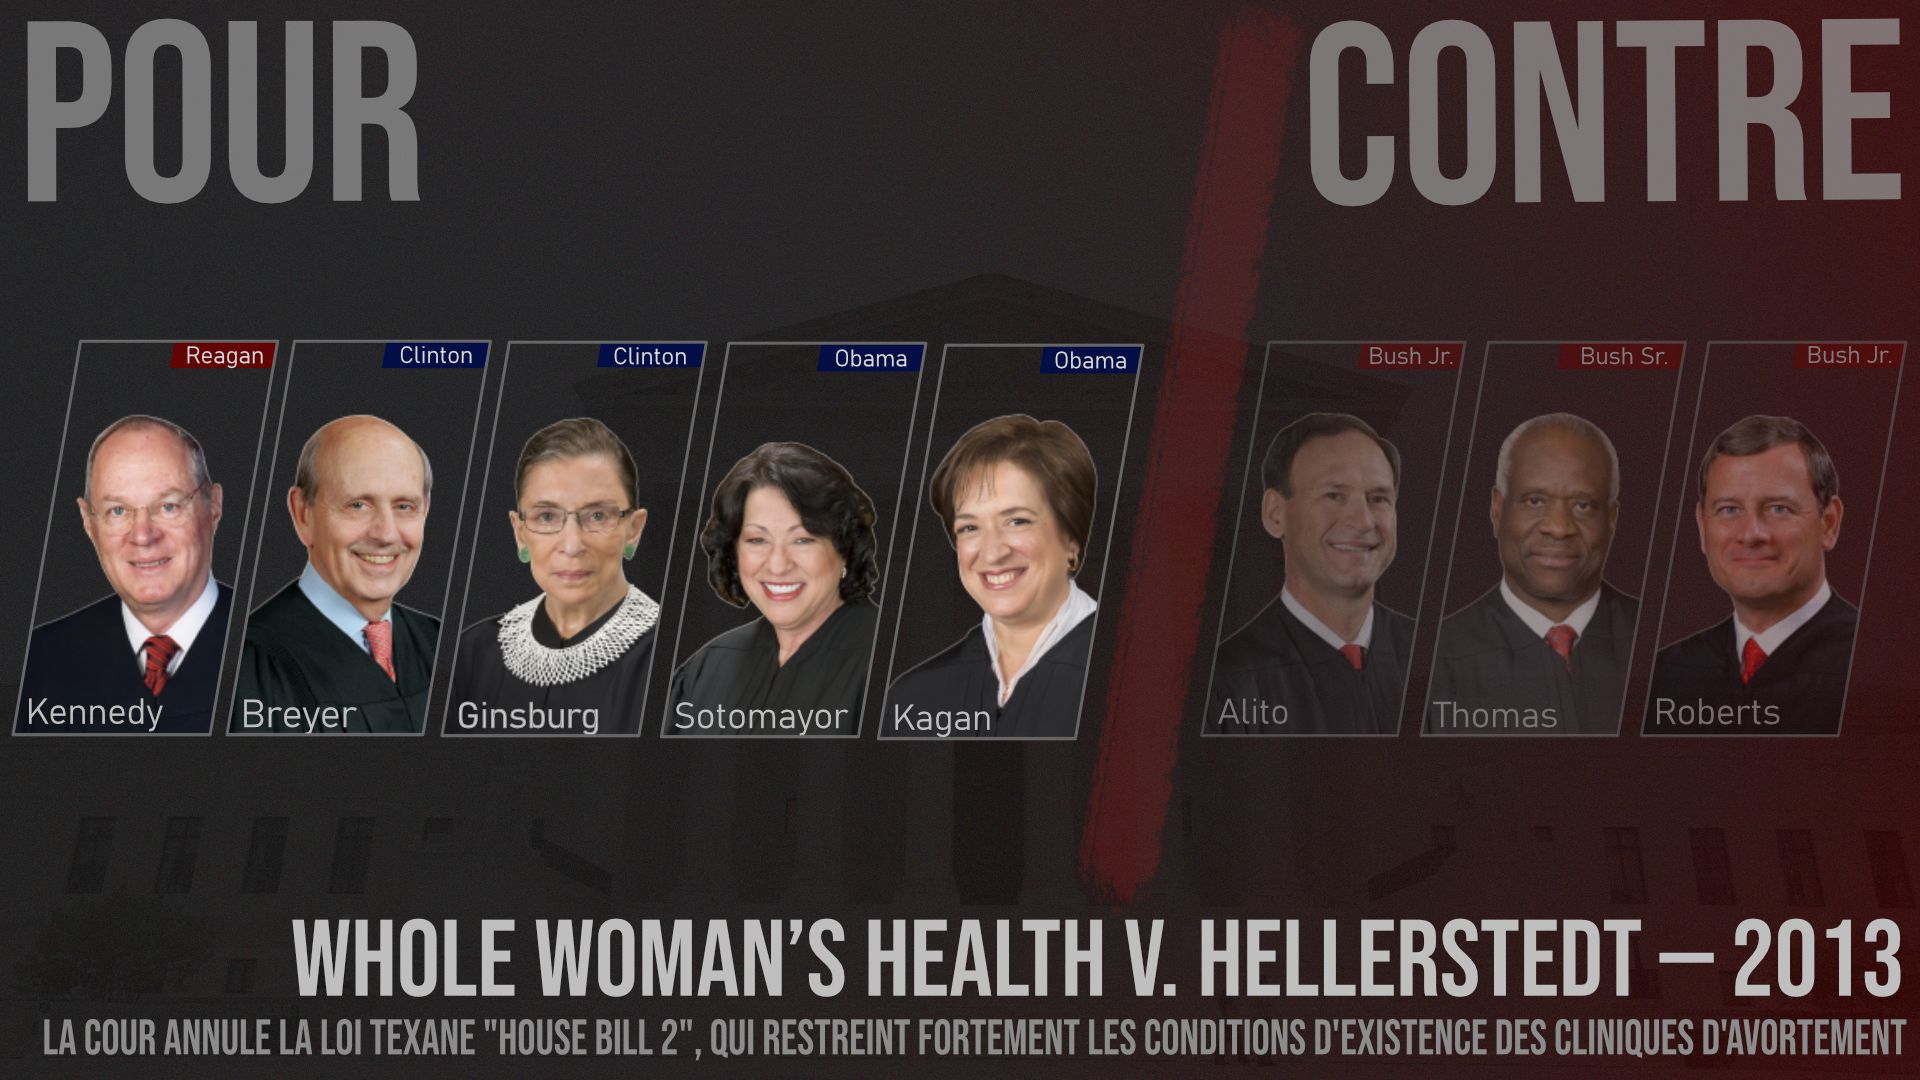 Résultat de la décision de la Cour suprême dans "Whole Woman’s Health v. Hellerstedt" (2013). Pour chaque juge, le président qui l’a nommé, et sa couleur politique : rouge = républicain ; bleu = démocrate.